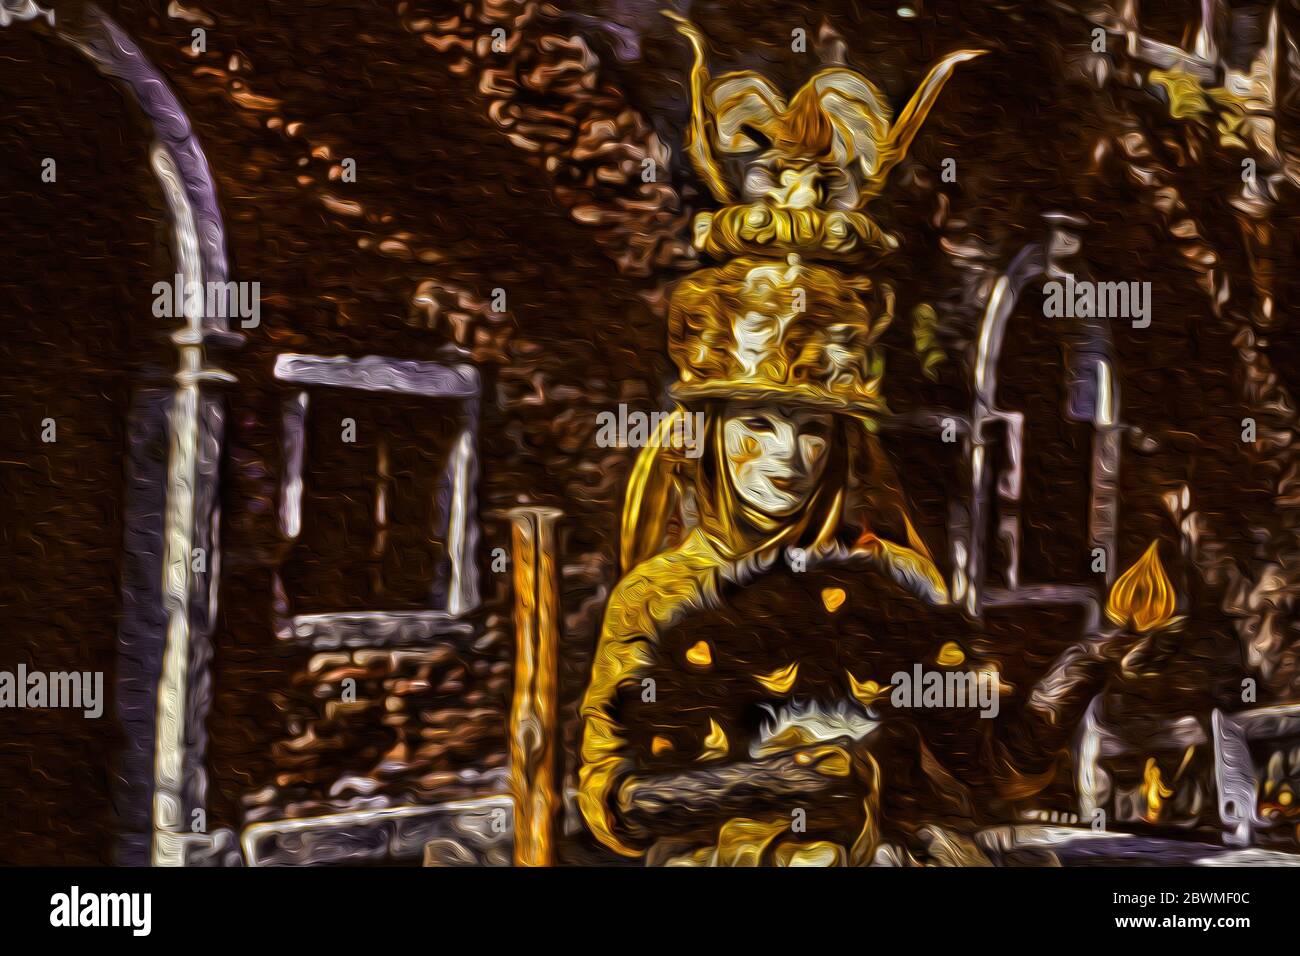 Carnaval révélateur portant un costume coloré et sophistiqué avec masque dans une allée au Carnaval de Venise, en Italie. Banque D'Images